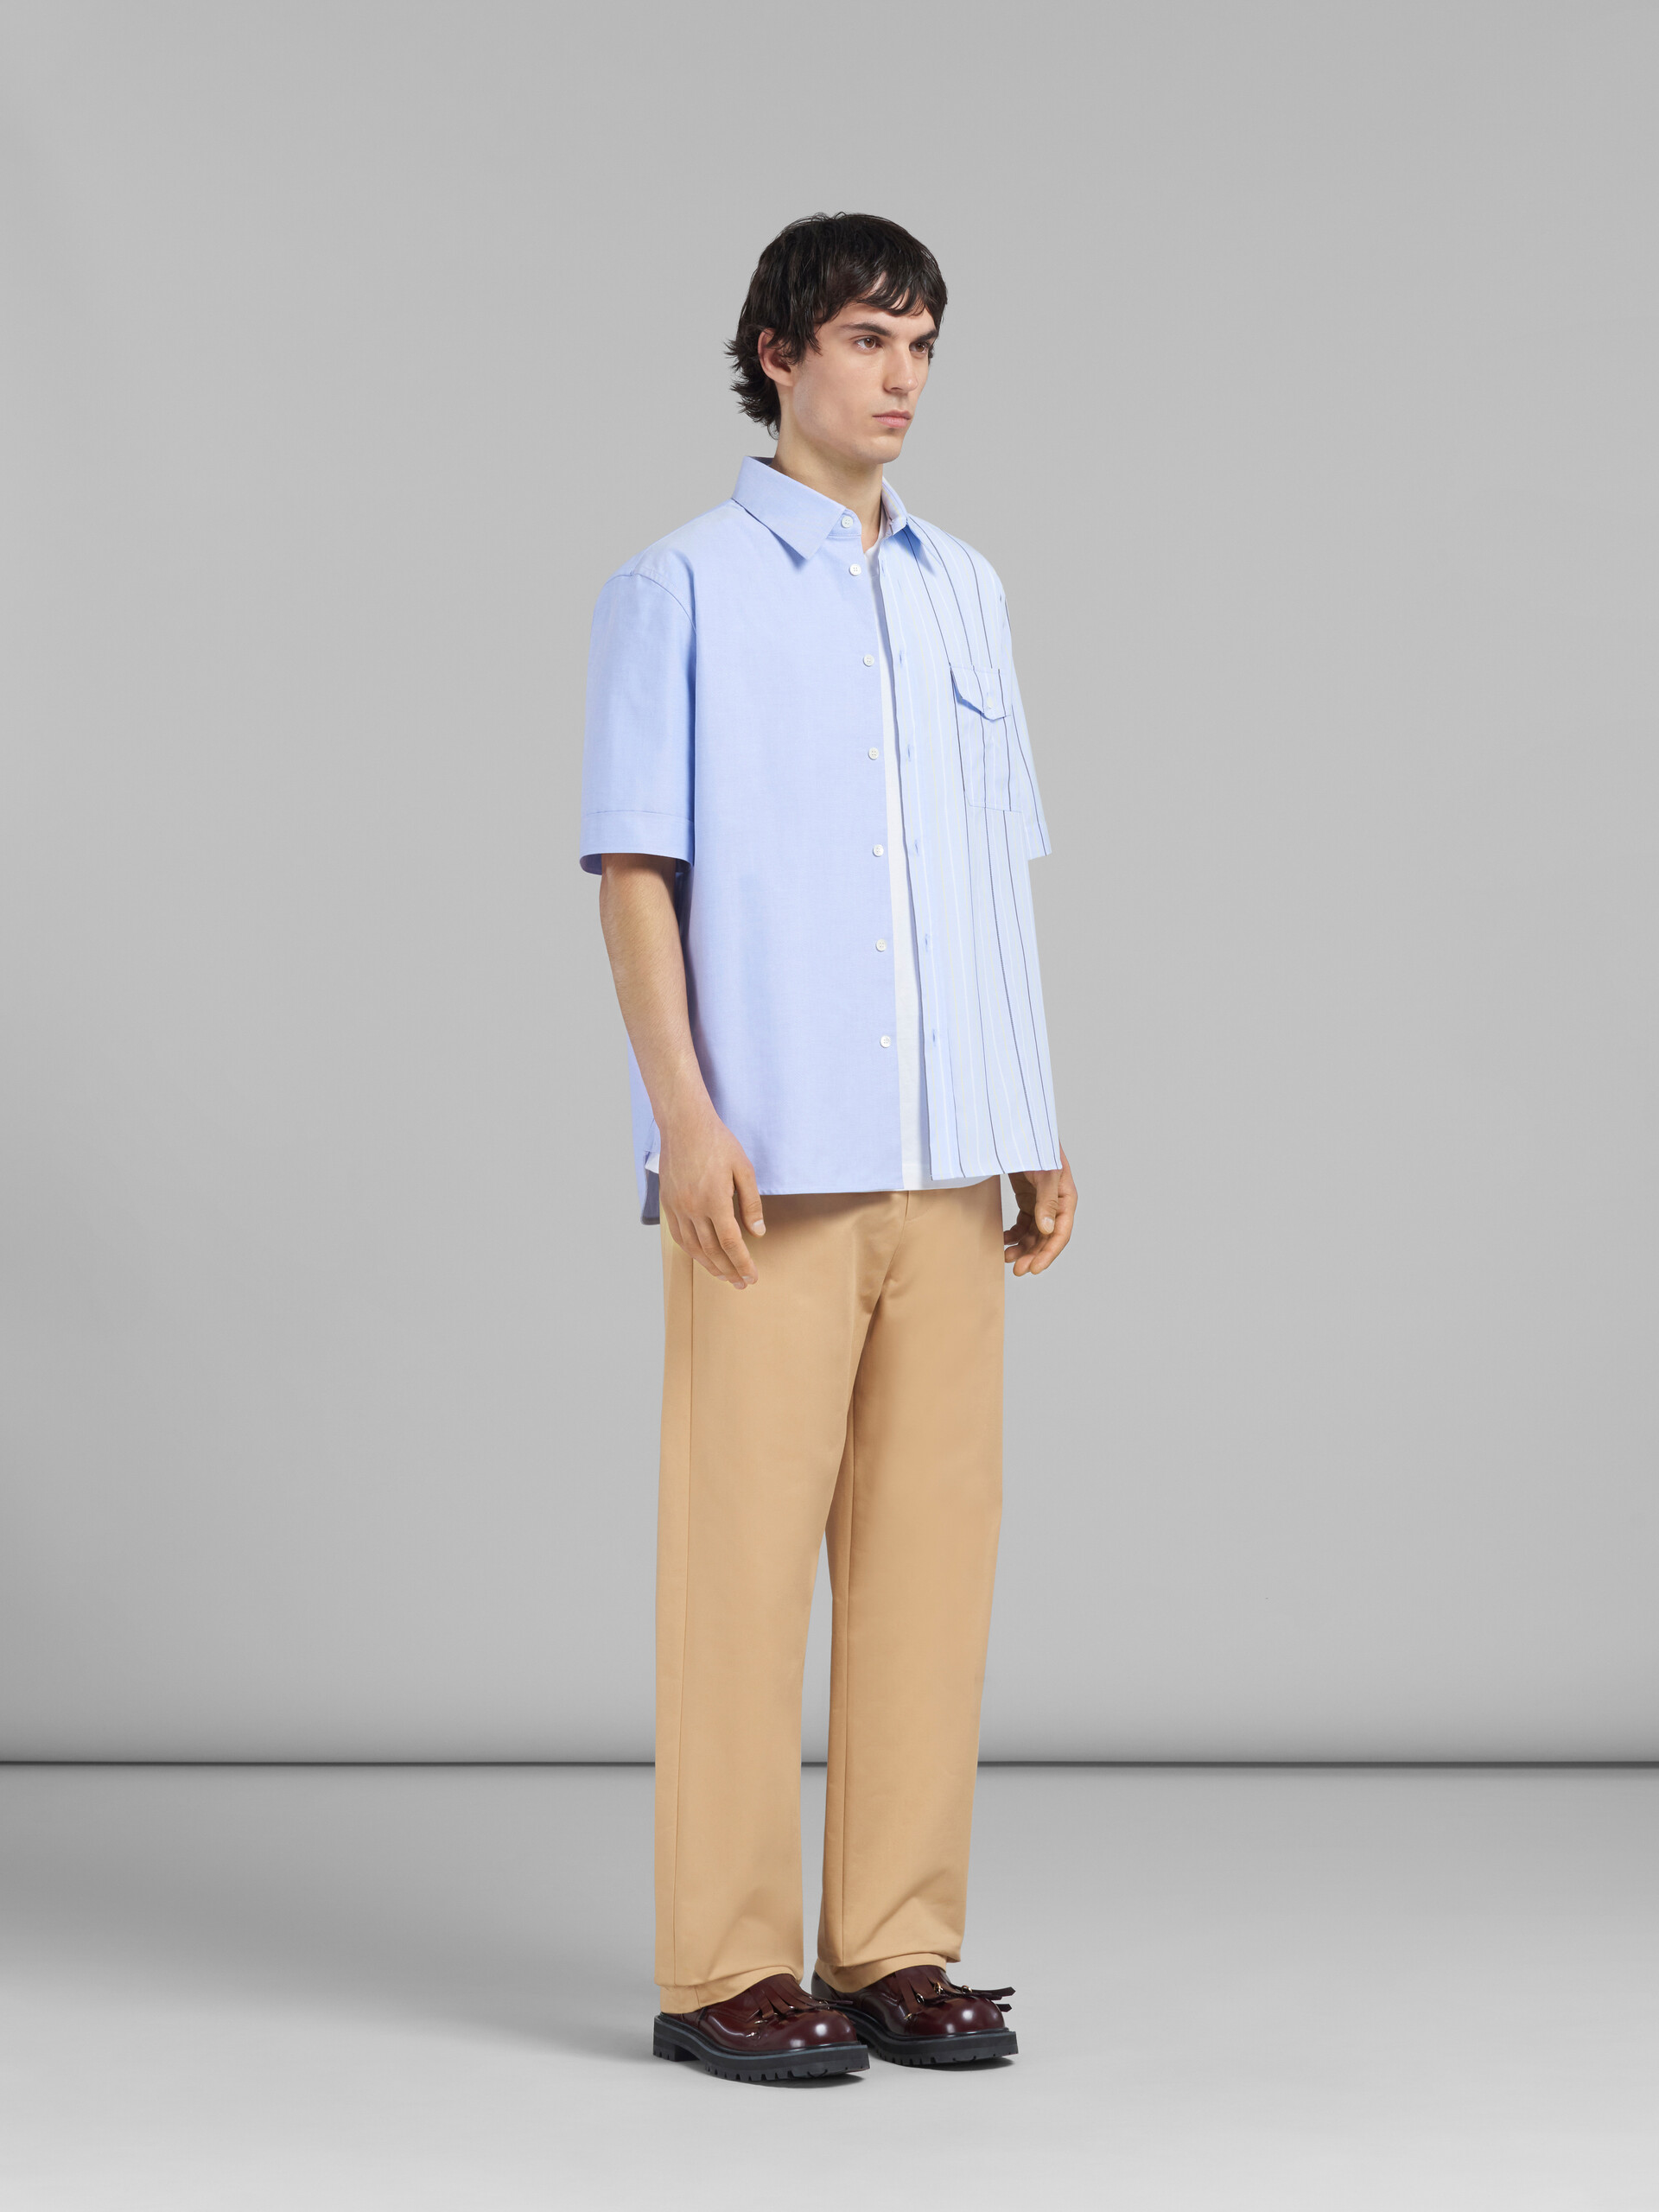 Camisa de popelina ecológica azul claro con diseño dividido por la mitad - Camisas - Image 5